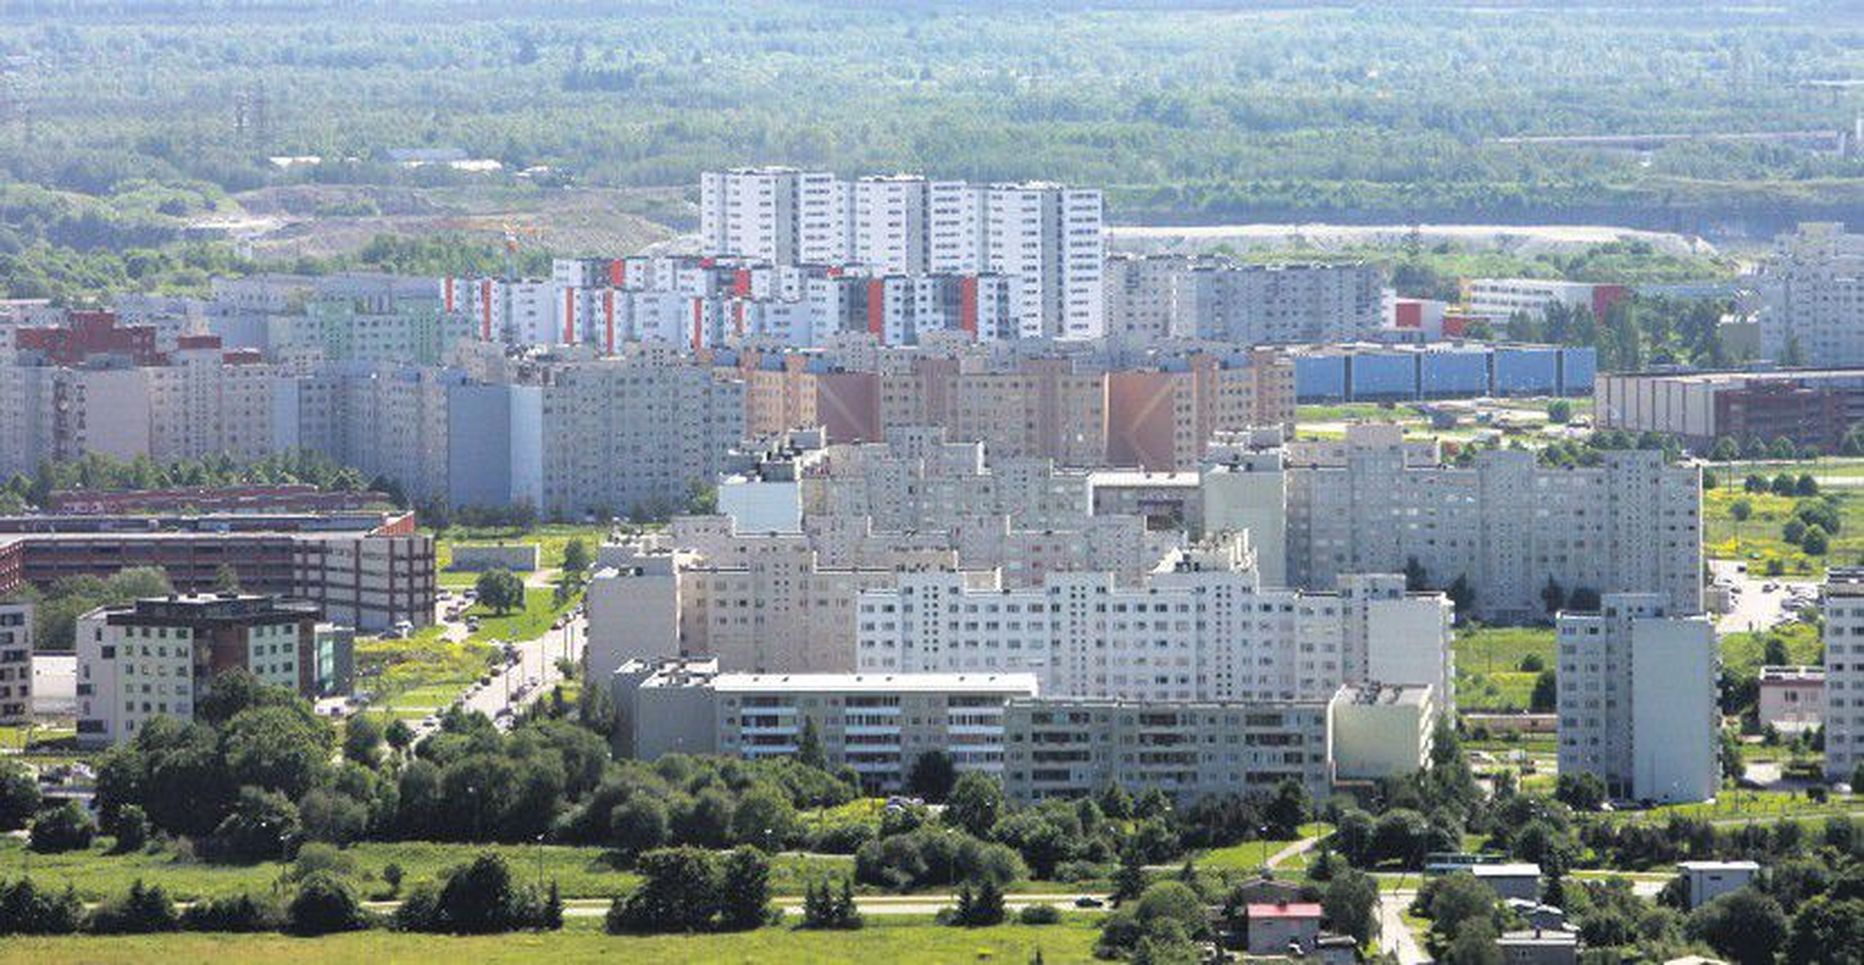 Üle kahe kolmandiku Eesti eluruumidest asuvad korterelamutes. Nende renoveerimisel tuleb energiasäästu kõrval arvestada ka tervisliku sisekliima tagamisega.